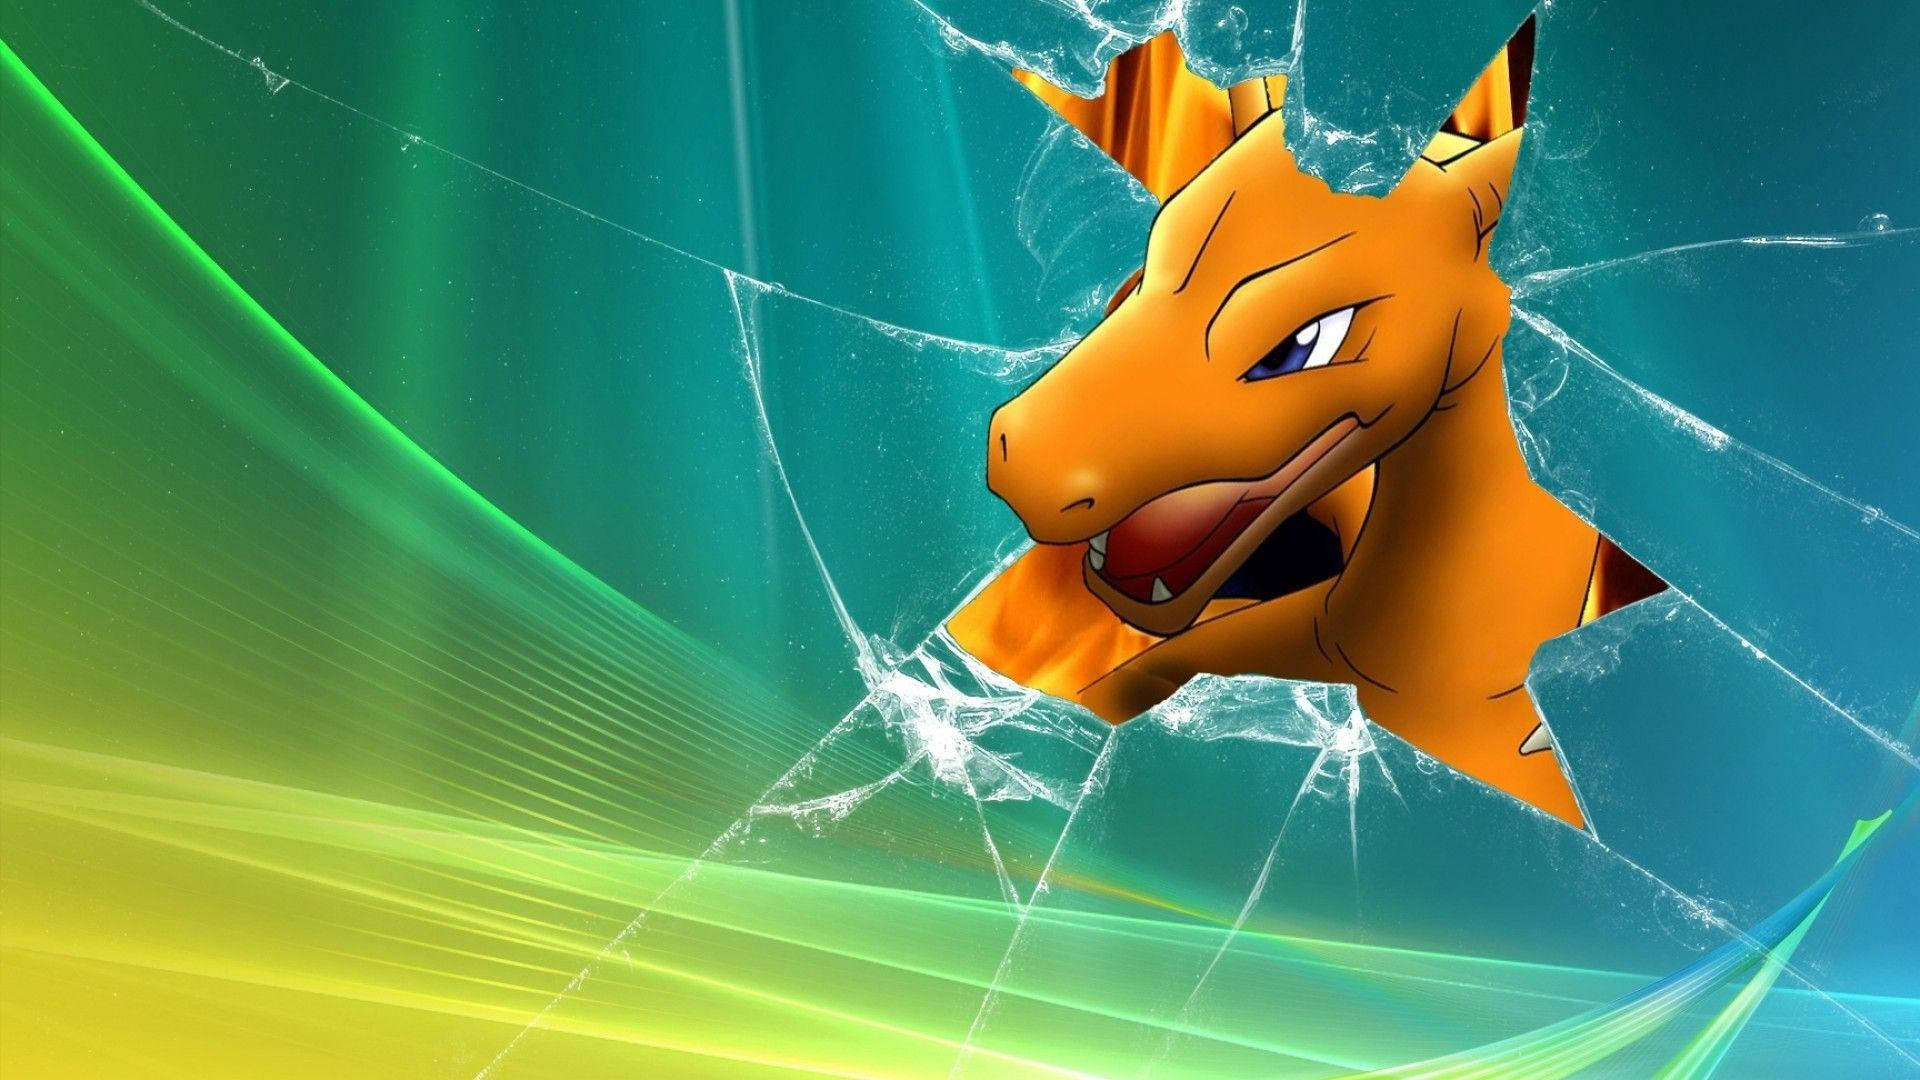 Charizard - A Powerful Dragon-type Pokémon Background